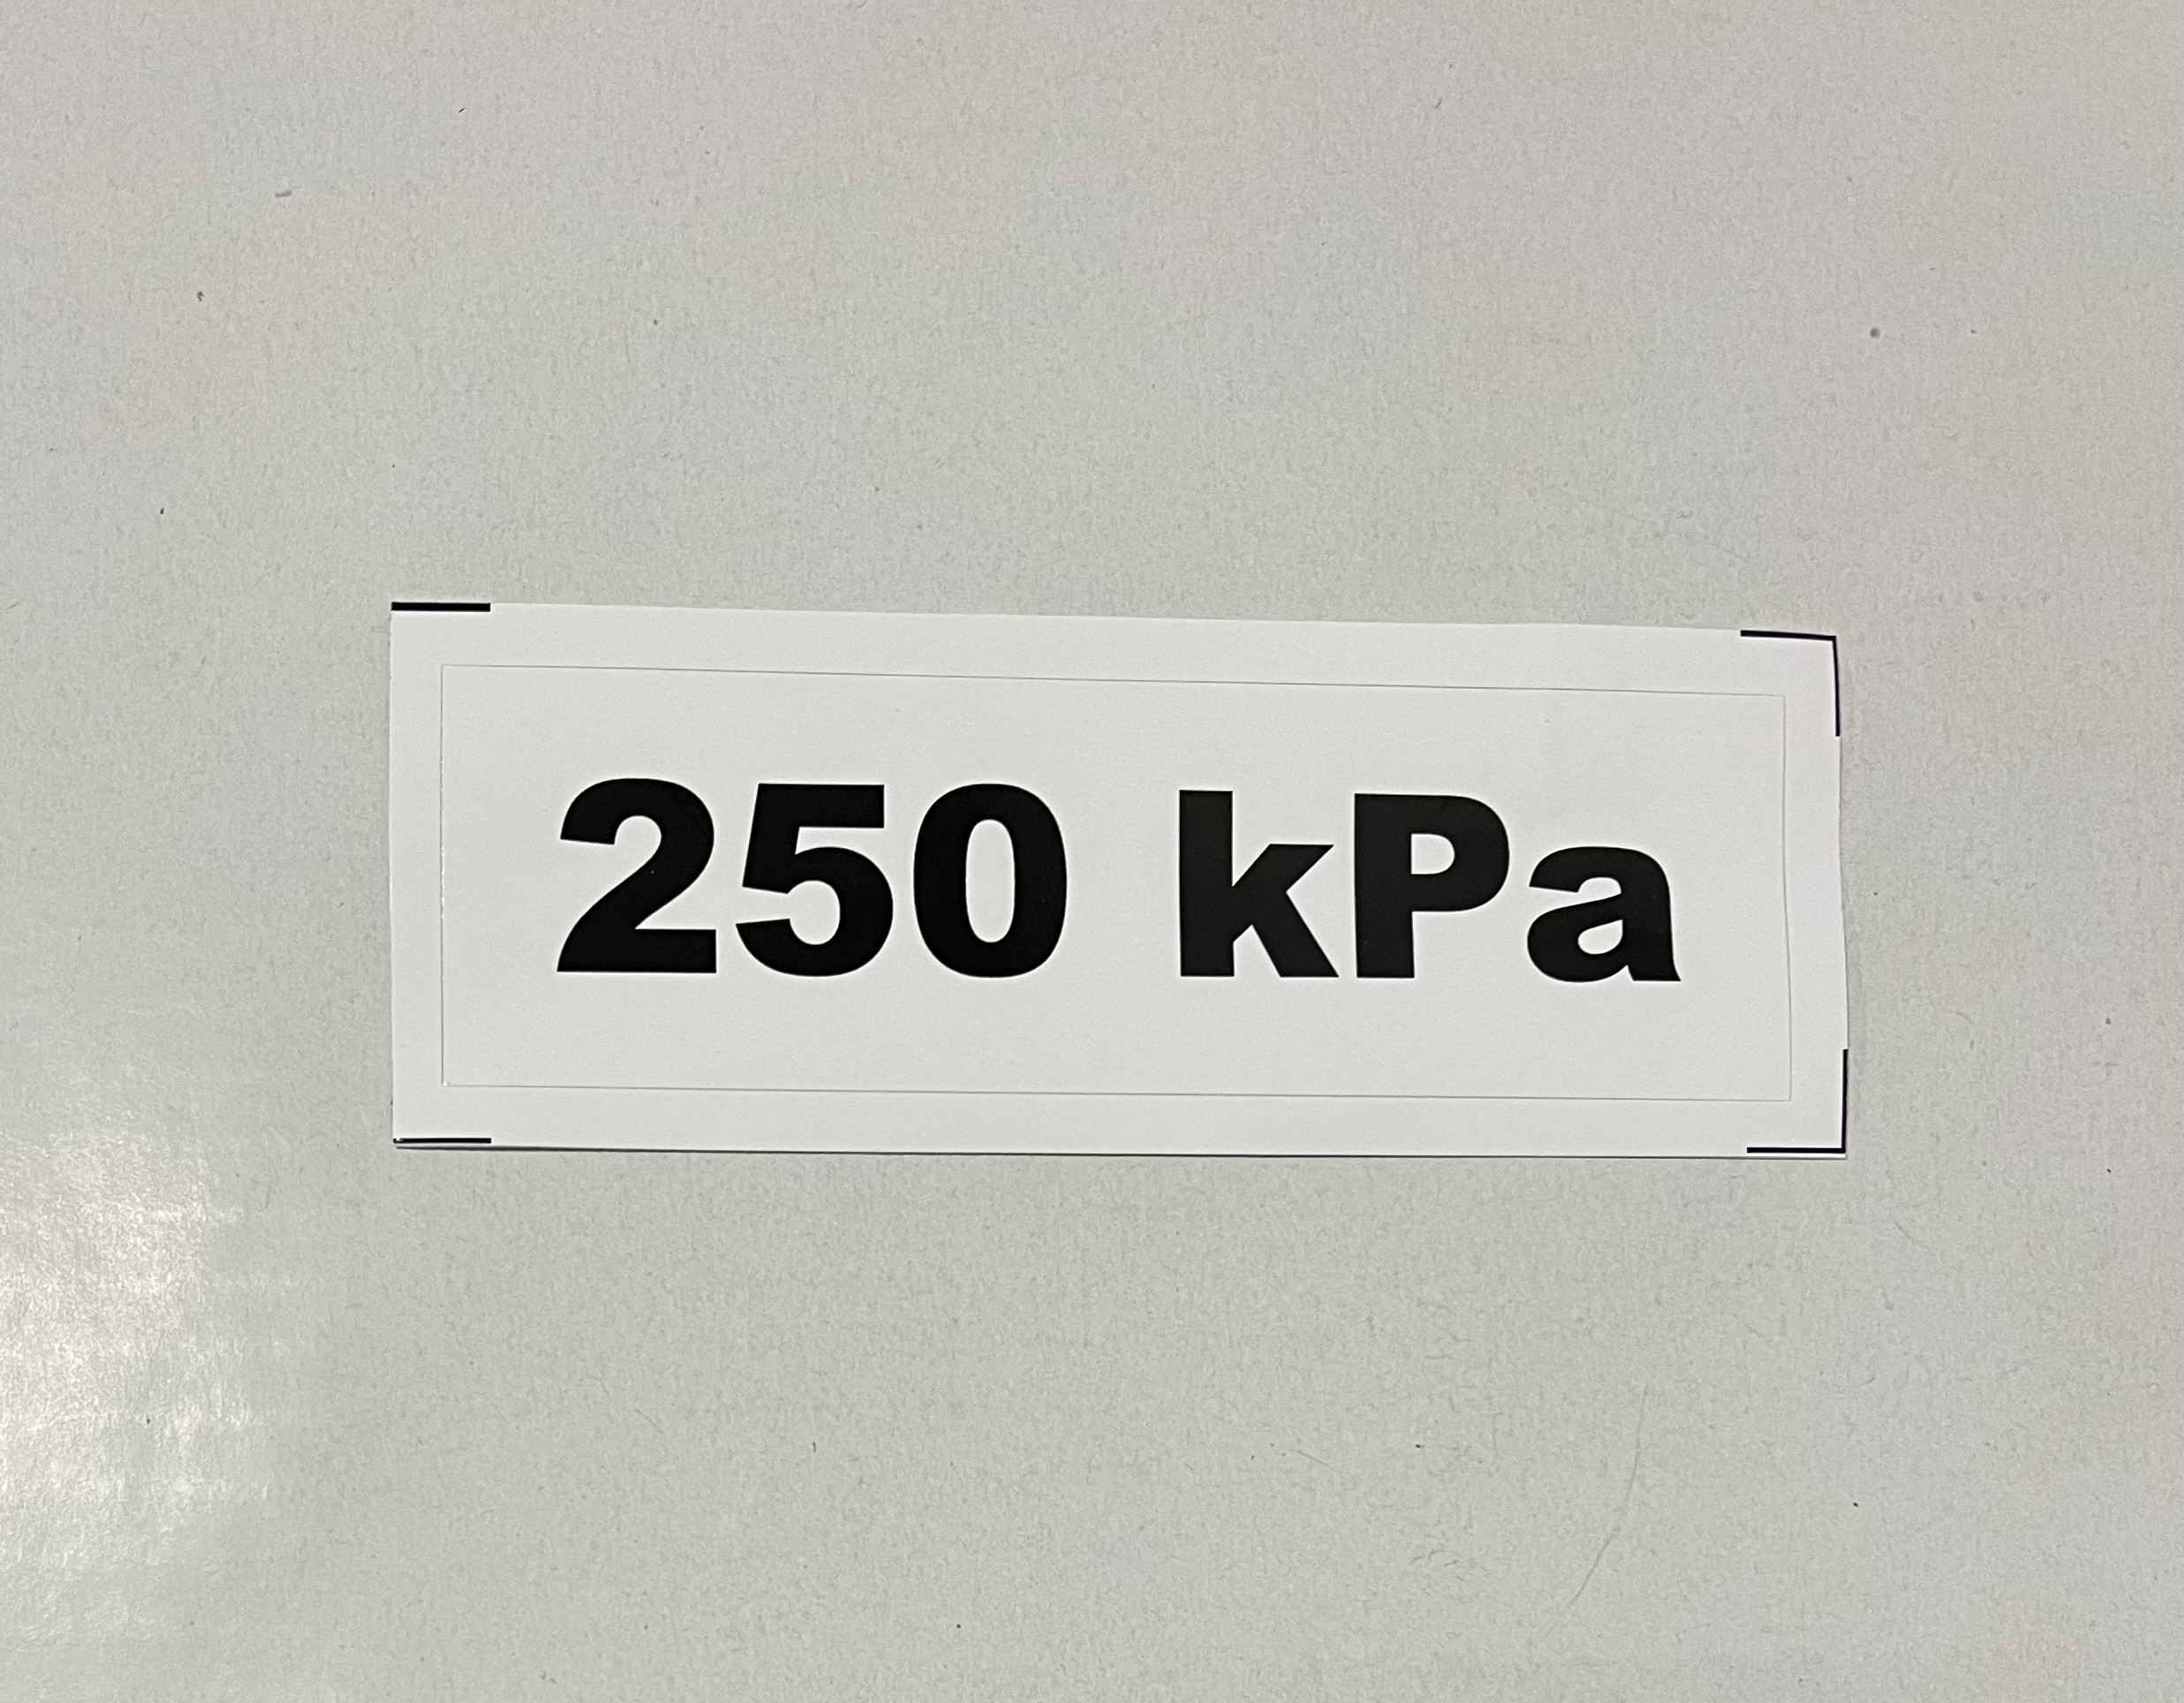 Označenie kPa 250